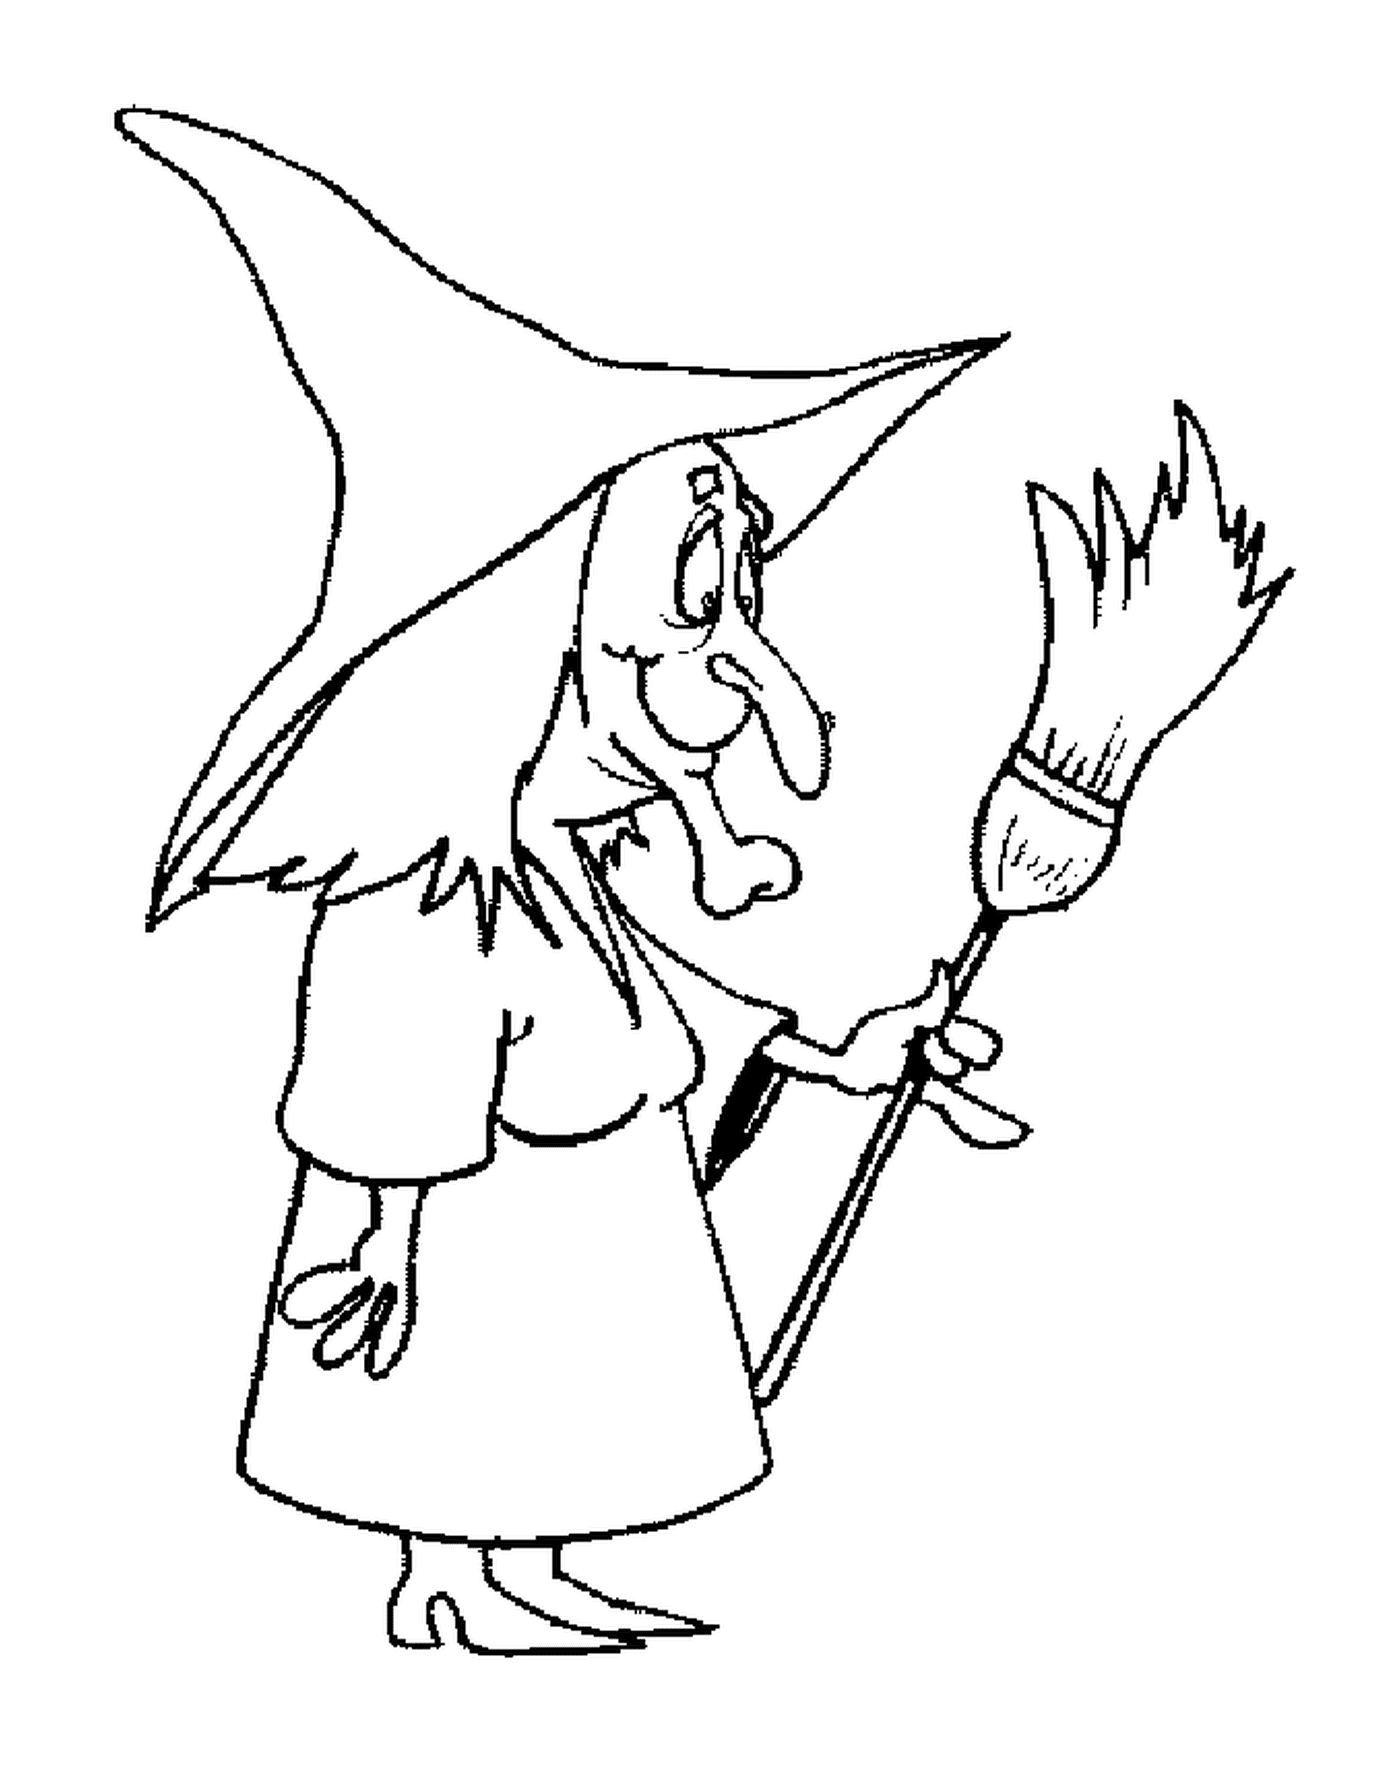 dessin d une sorciere avec son balai a la main